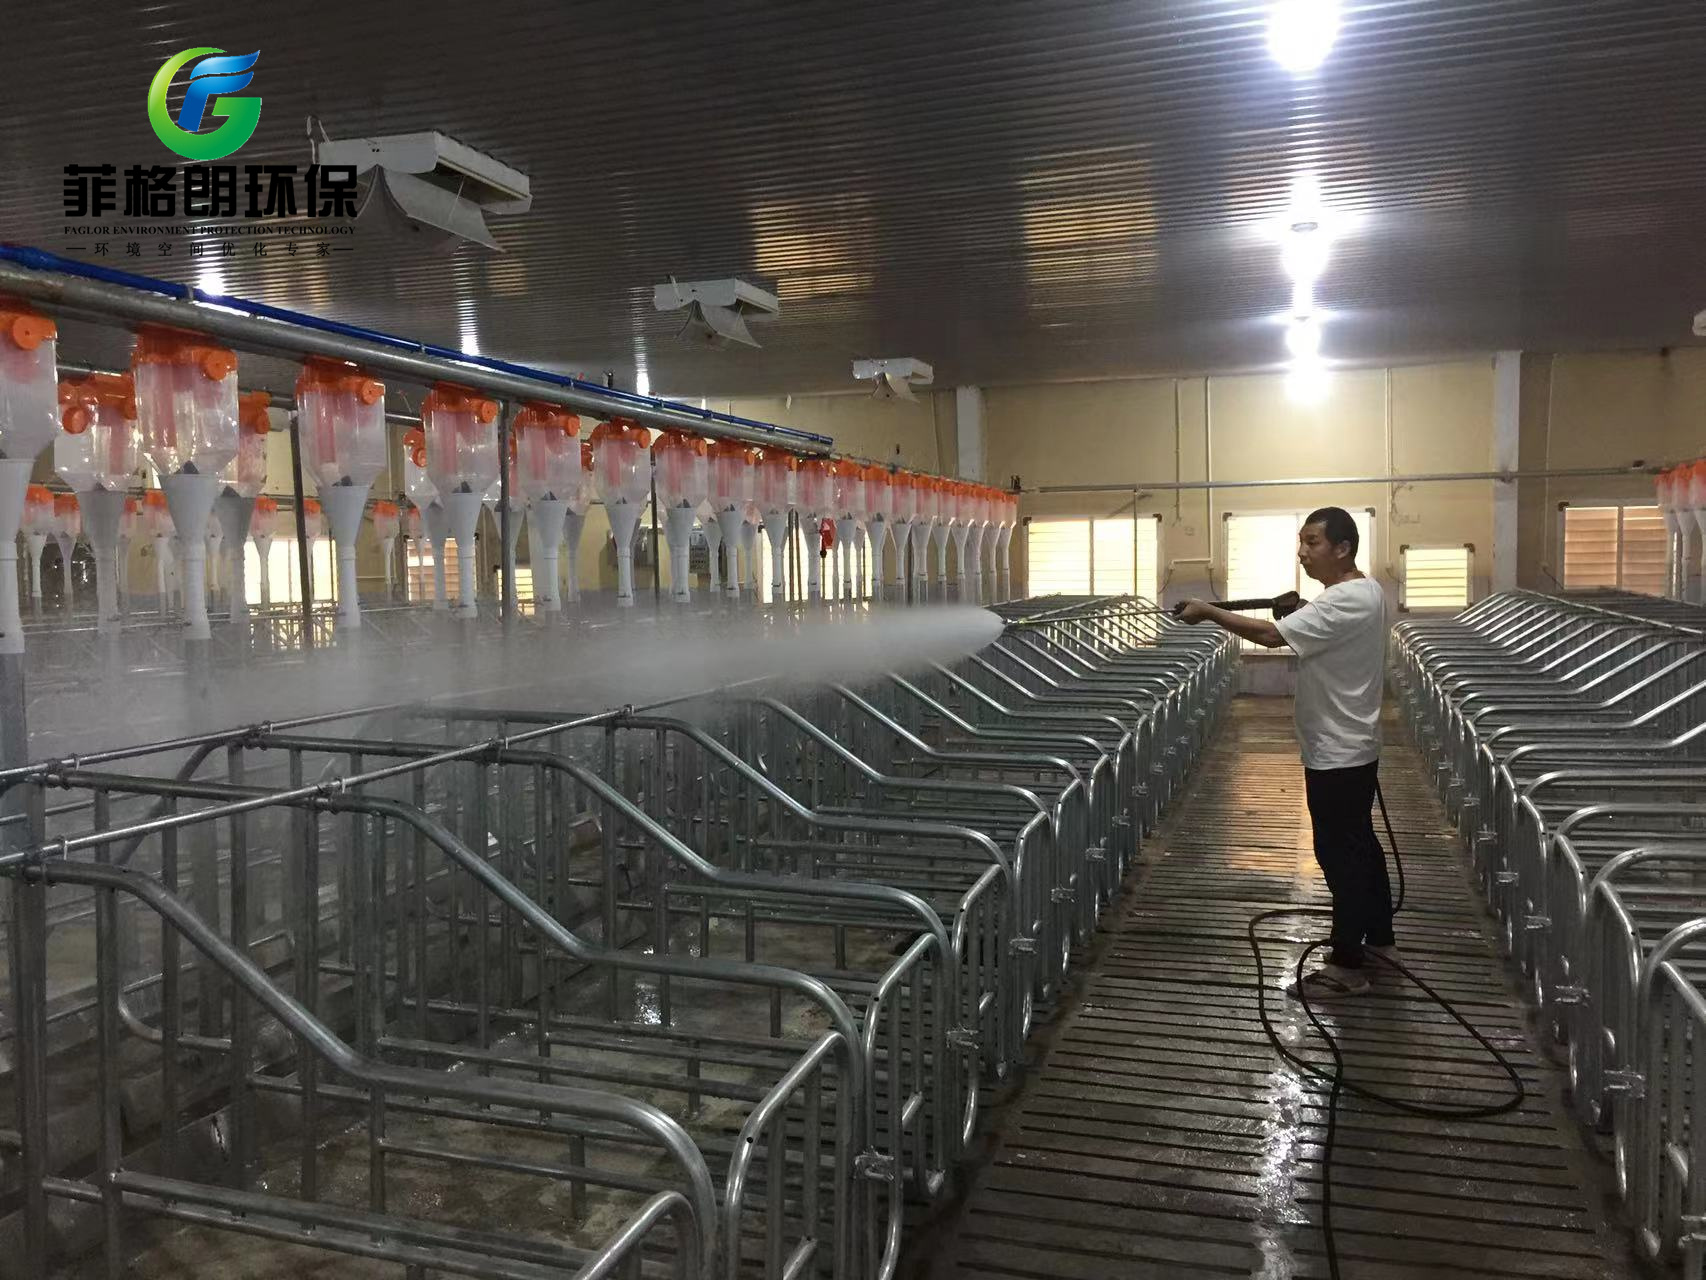 雲南聖基光電生豬養殖接入菲格朗中央清洗系統插圖2